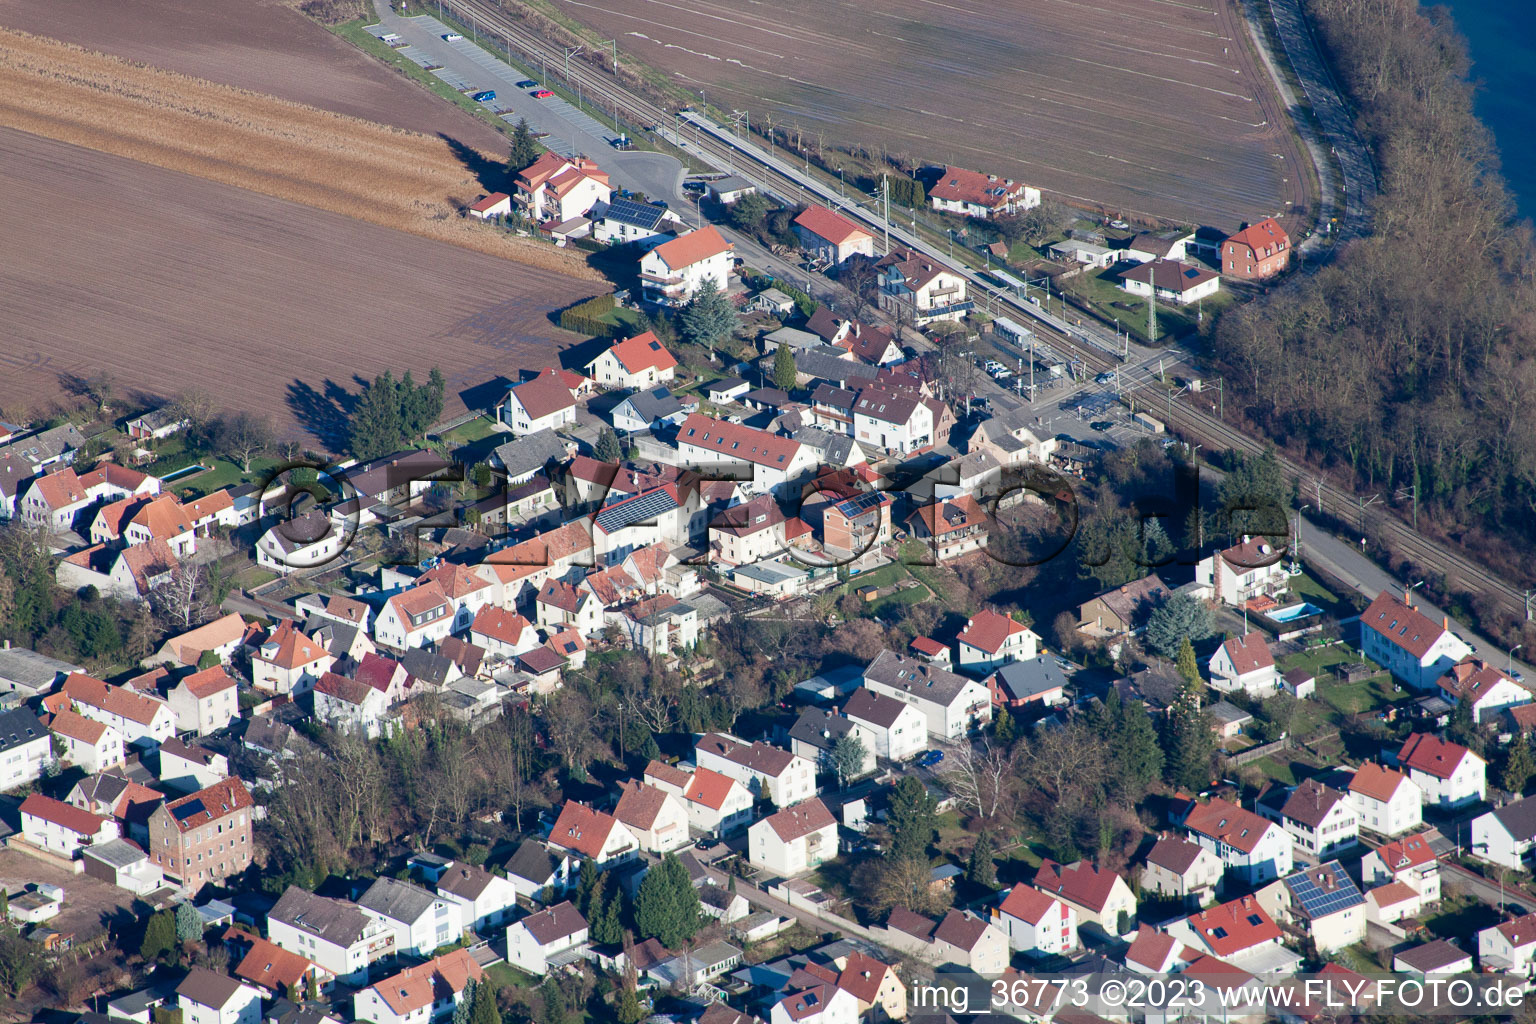 Lingenfeld im Bundesland Rheinland-Pfalz, Deutschland aus der Luft betrachtet